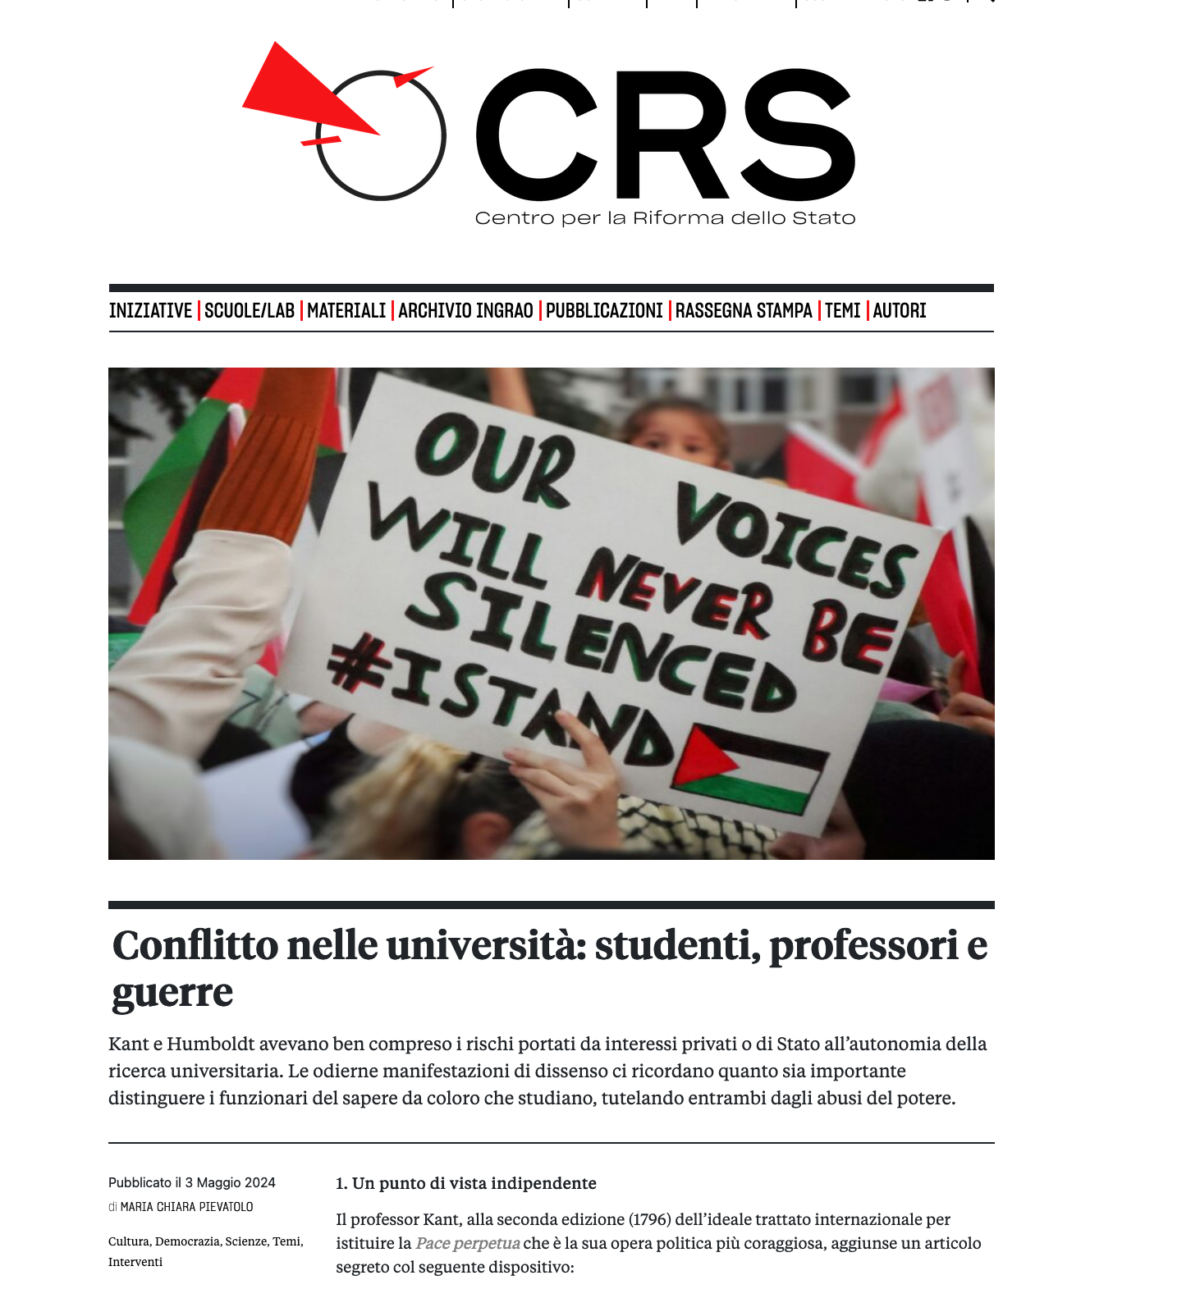 Conflitto nelle università: studenti, professori e guerre